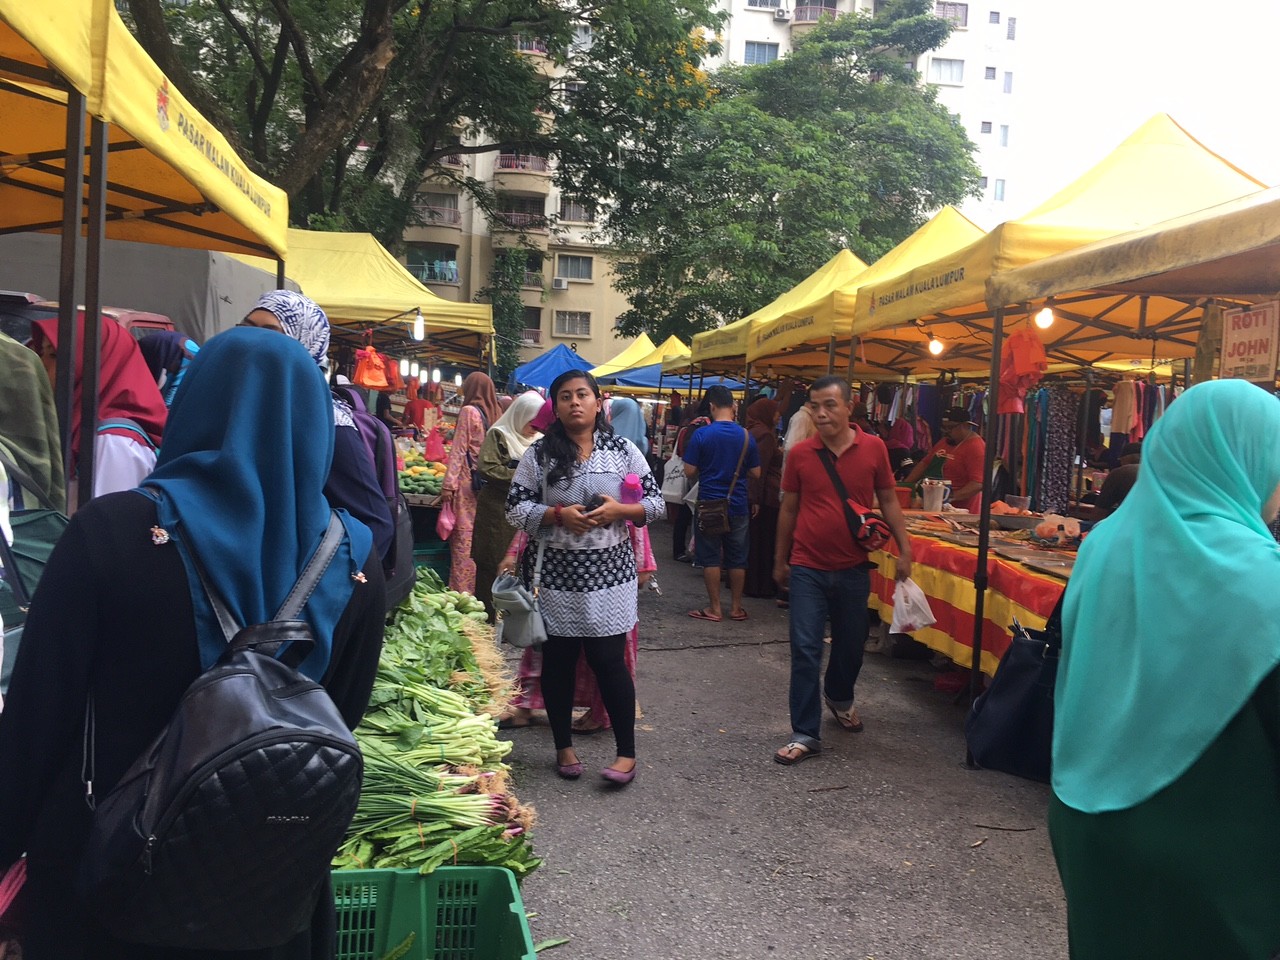 Pasar Malam Kuala Lumpur : Kepong Baru Pasar Malam - Kuala Lumpur